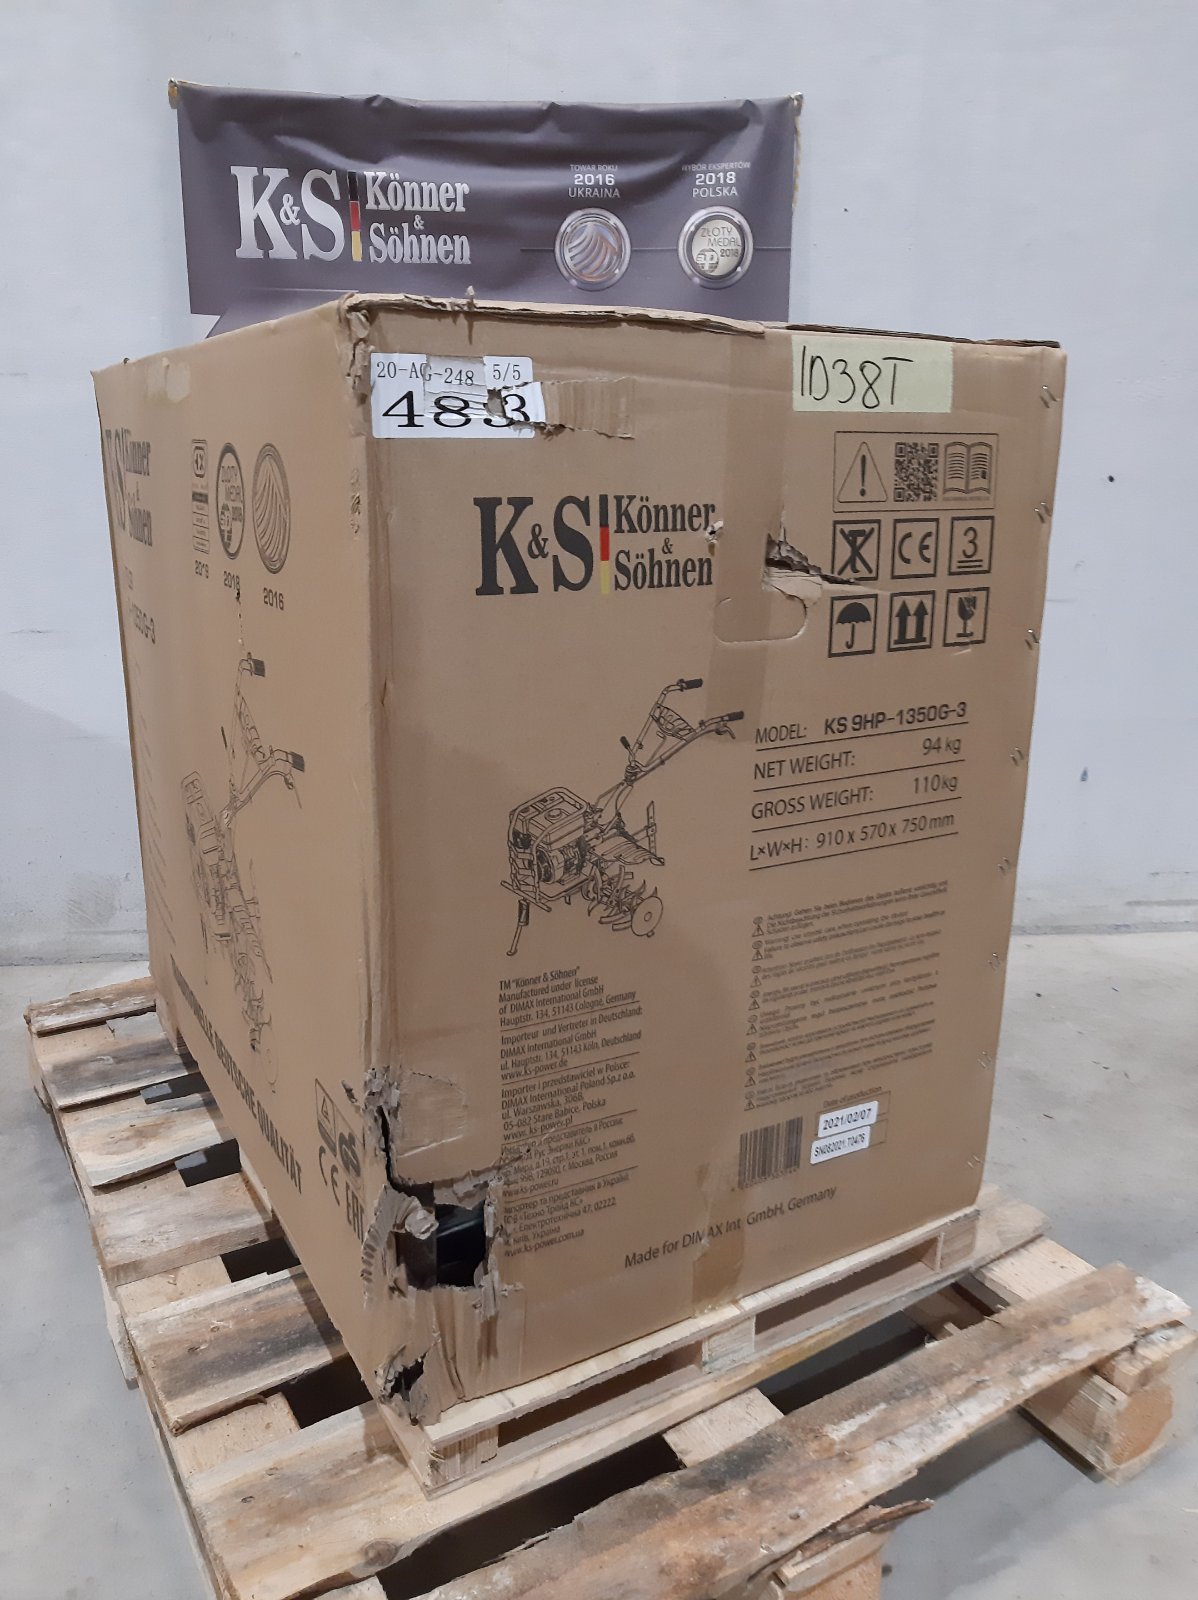 KS 9HP-1350G-3 (400) (ID 38 T)